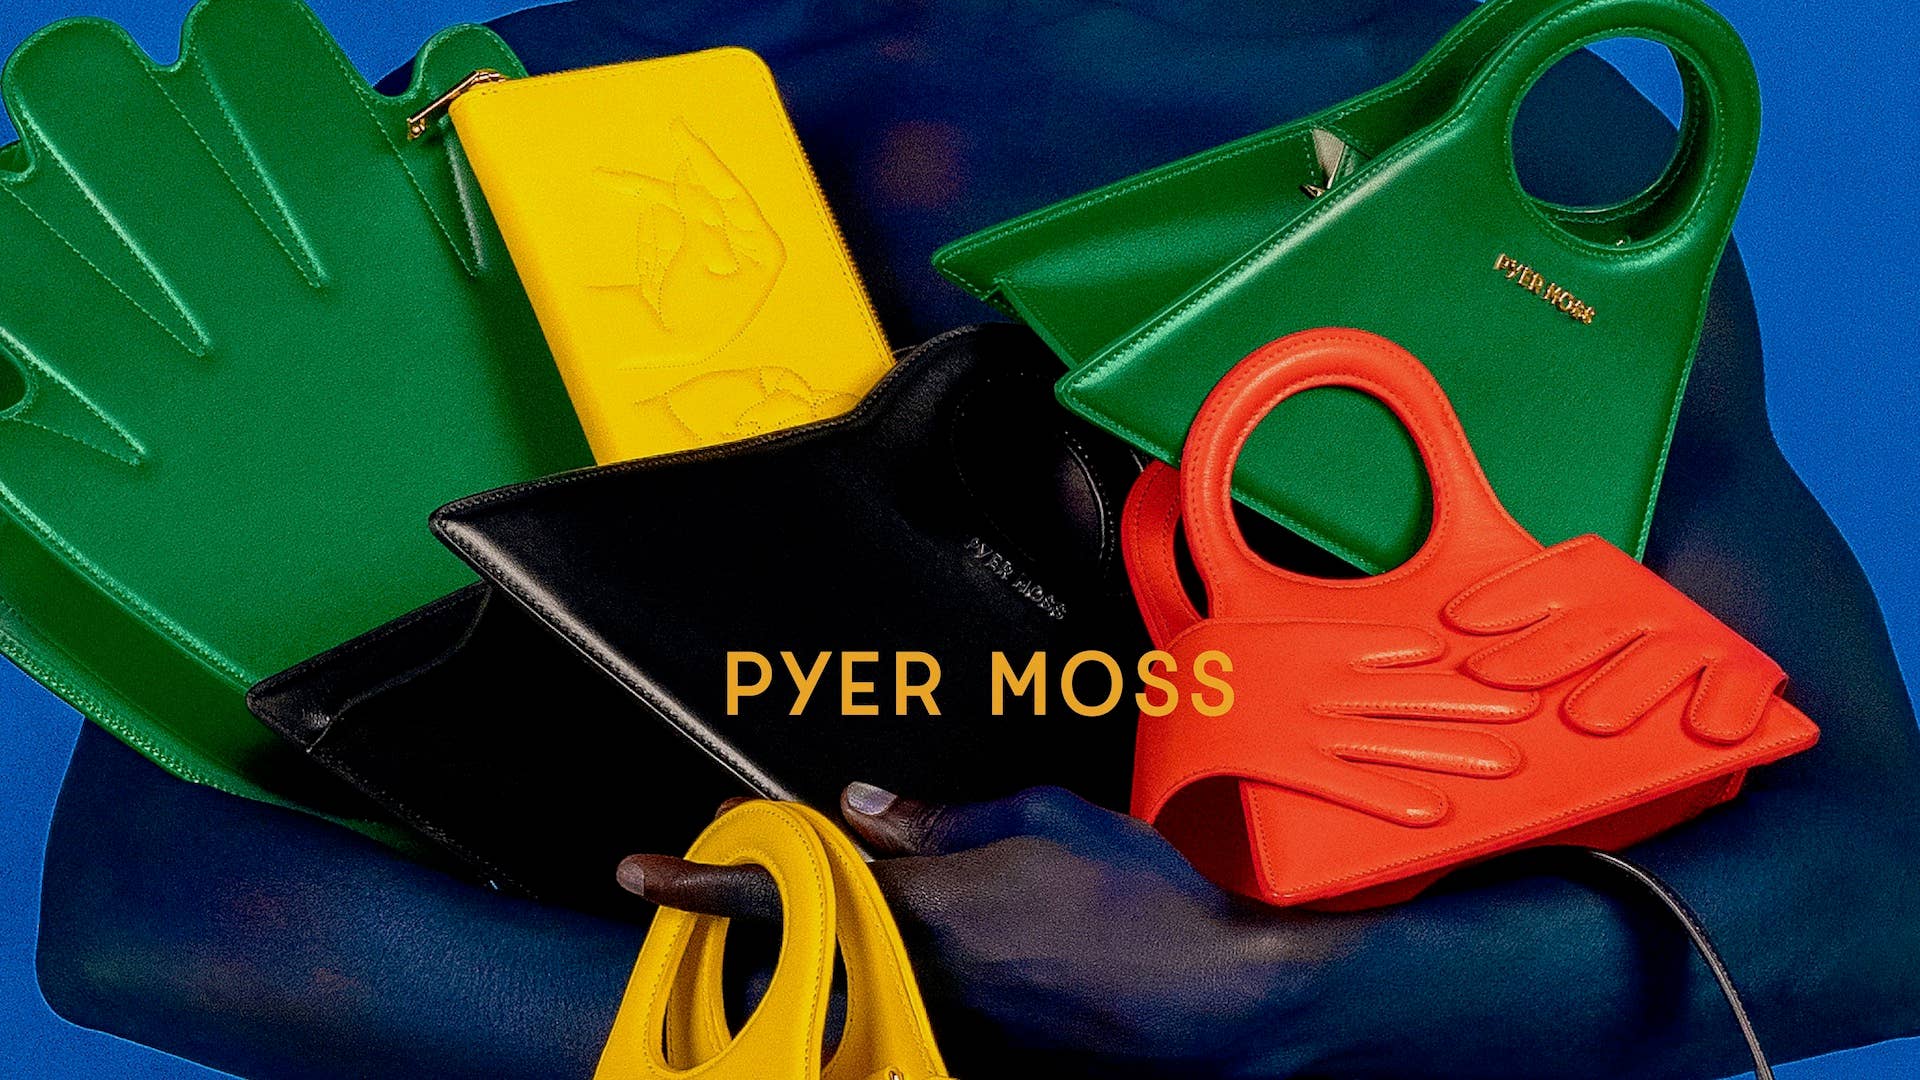 Pyer Moss footwear x bags